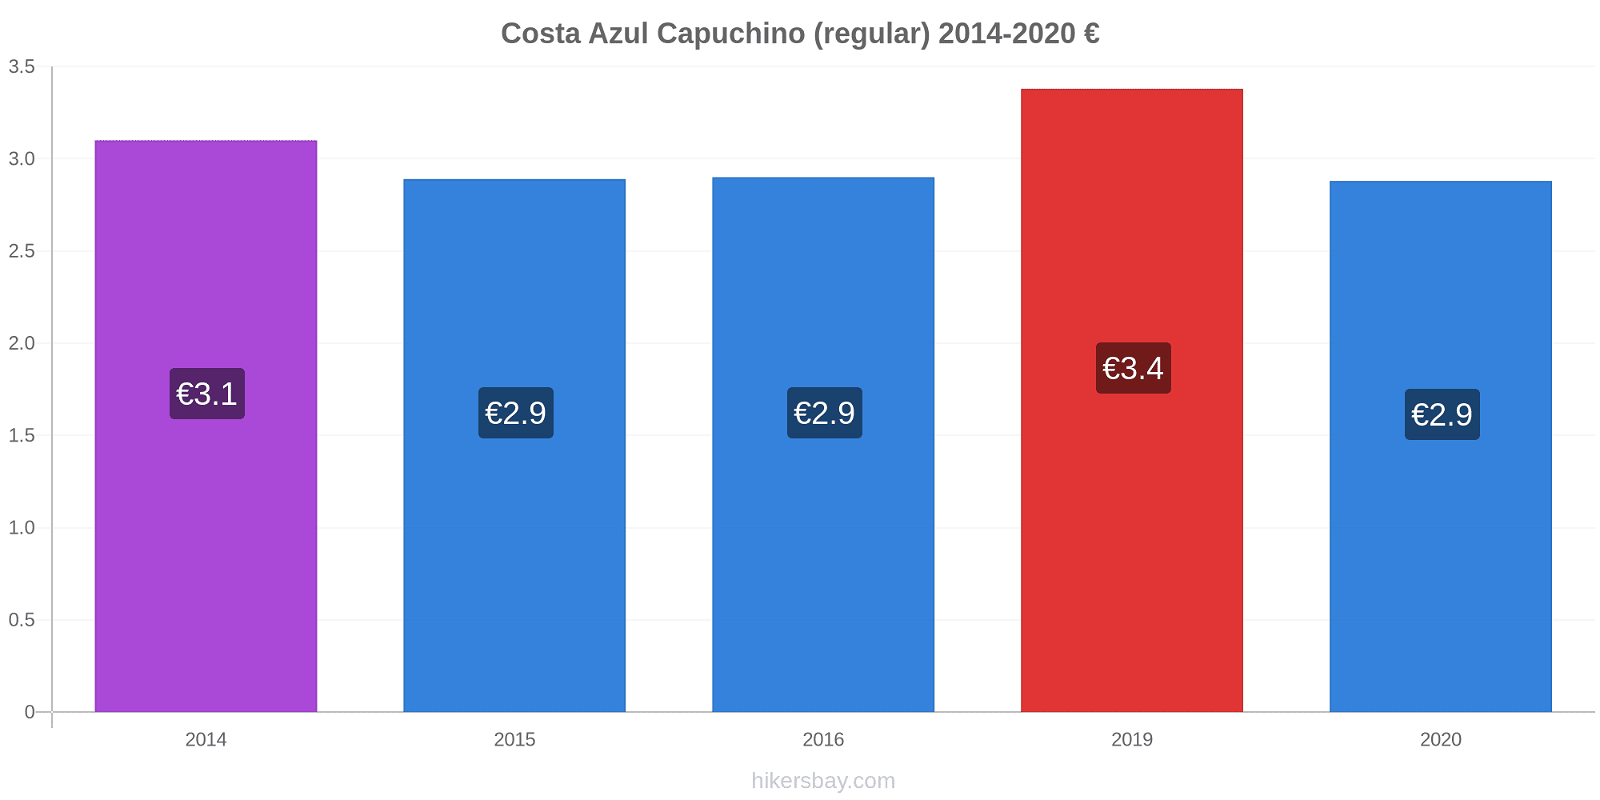 Costa Azul cambios de precios Capuchino (regular) hikersbay.com